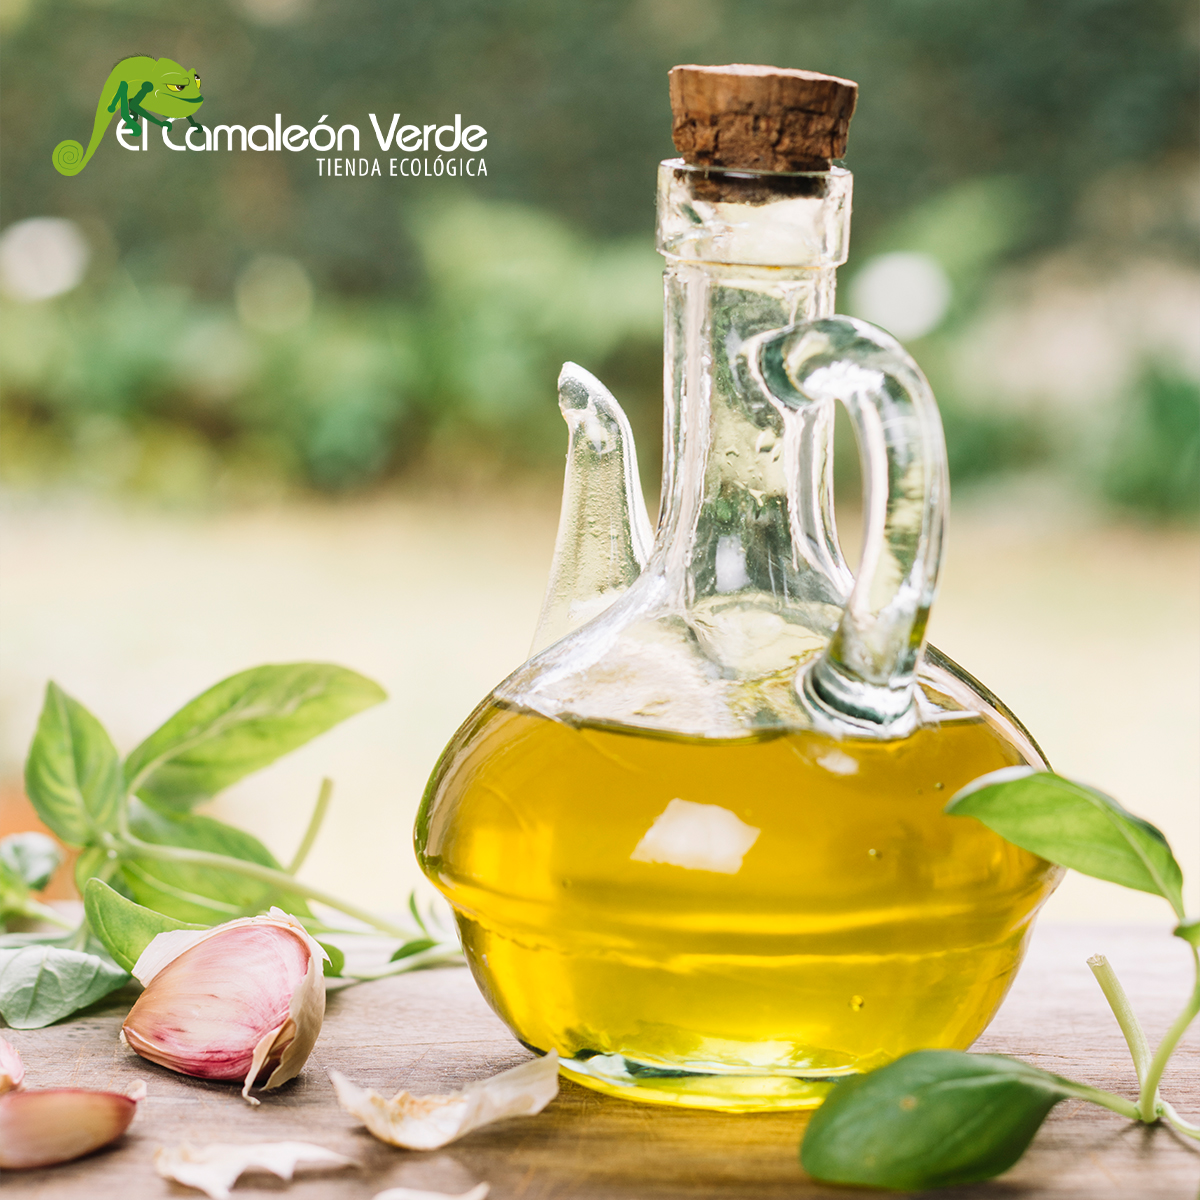 ¿Cuál es el mejor aceite de oliva? El Camaleón Verde